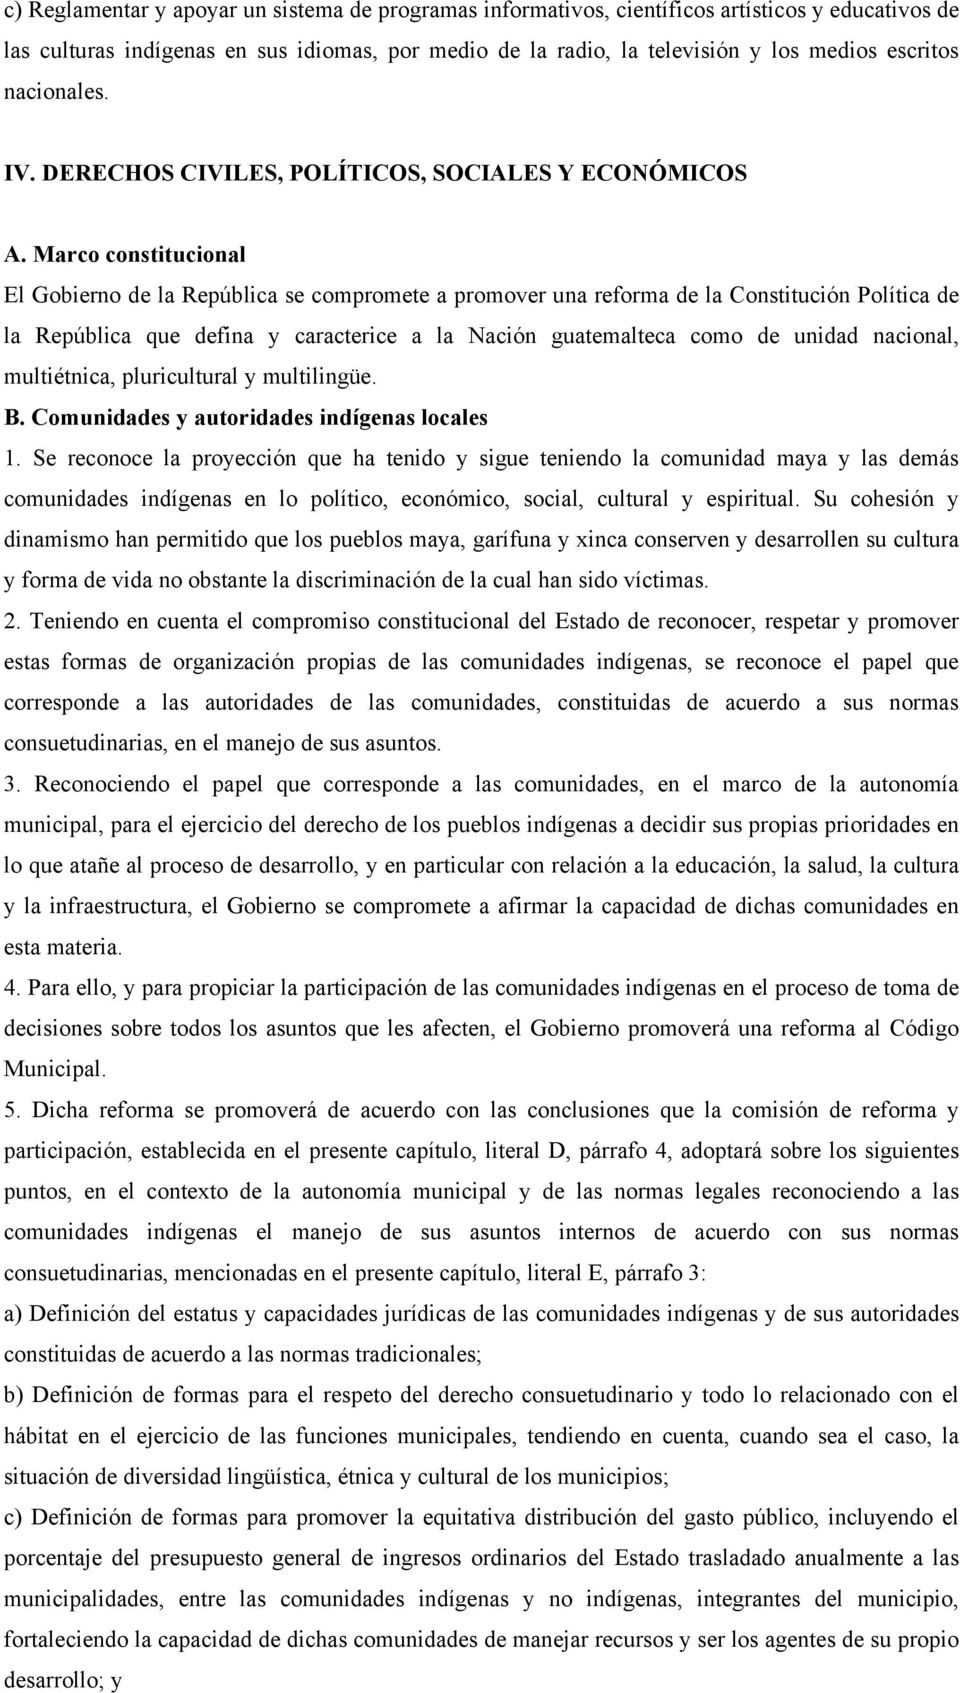 Marco constitucional El Gobierno de la República se compromete a promover una reforma de la Constitución Política de la República que defina y caracterice a la Nación guatemalteca como de unidad